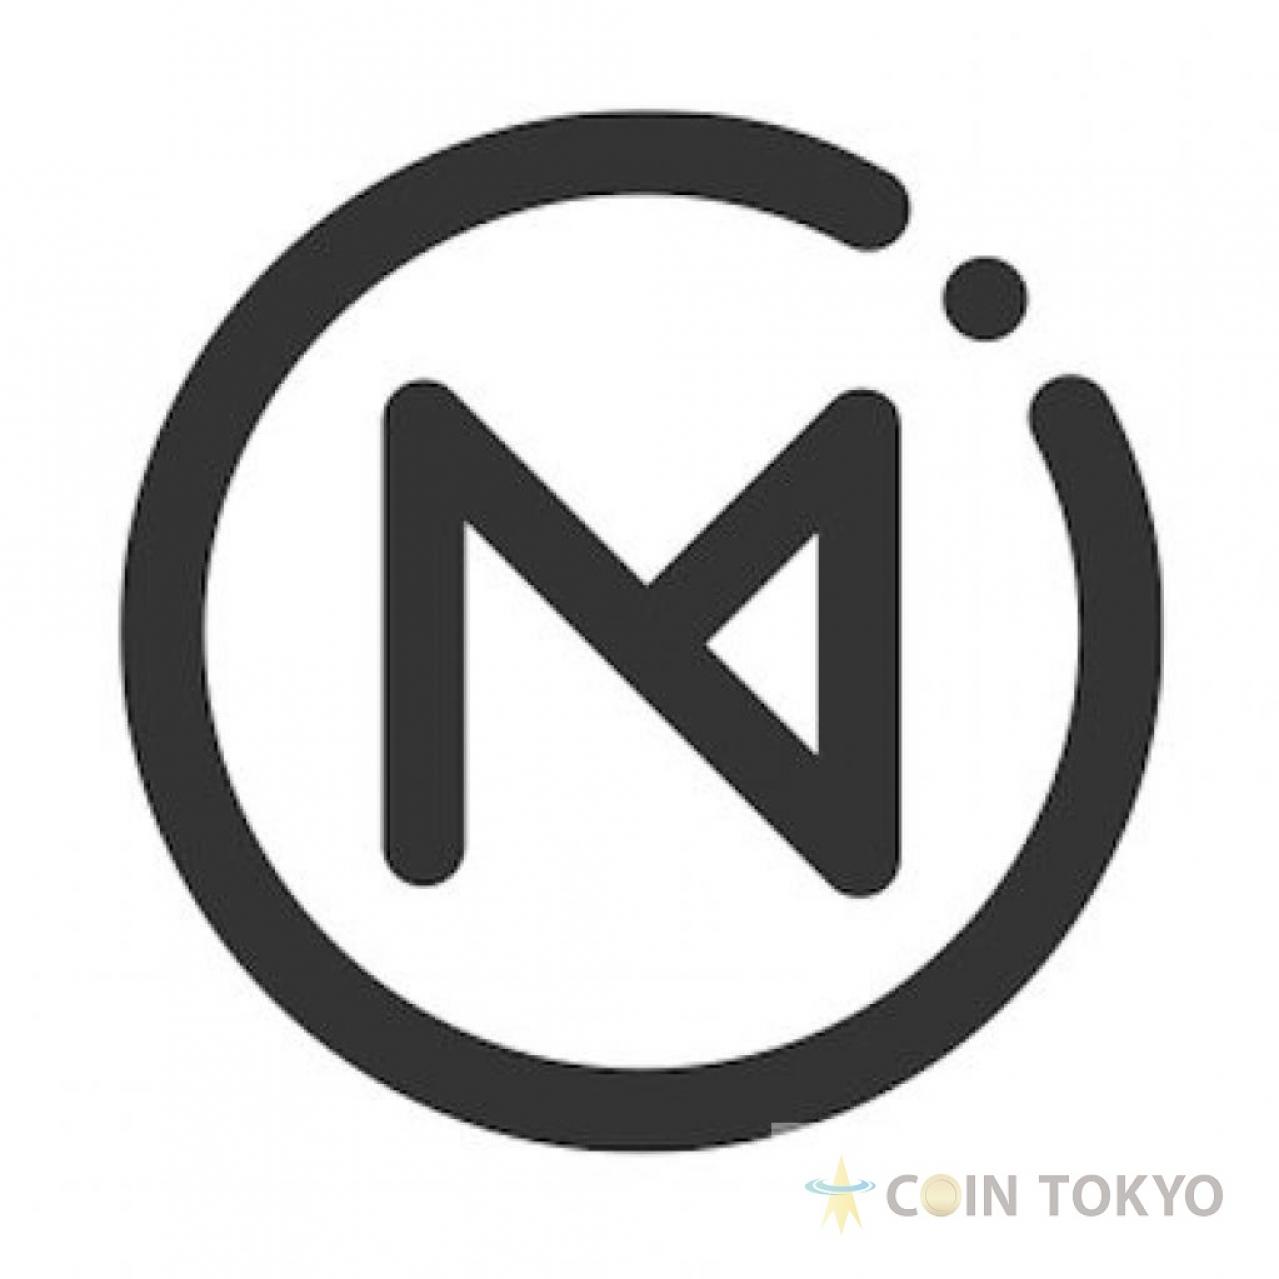 美国P2P租赁Omni，与Coinbase进行谈判，或移除针对亲和性加密货币新闻网站Coin Tokyo的加密货币